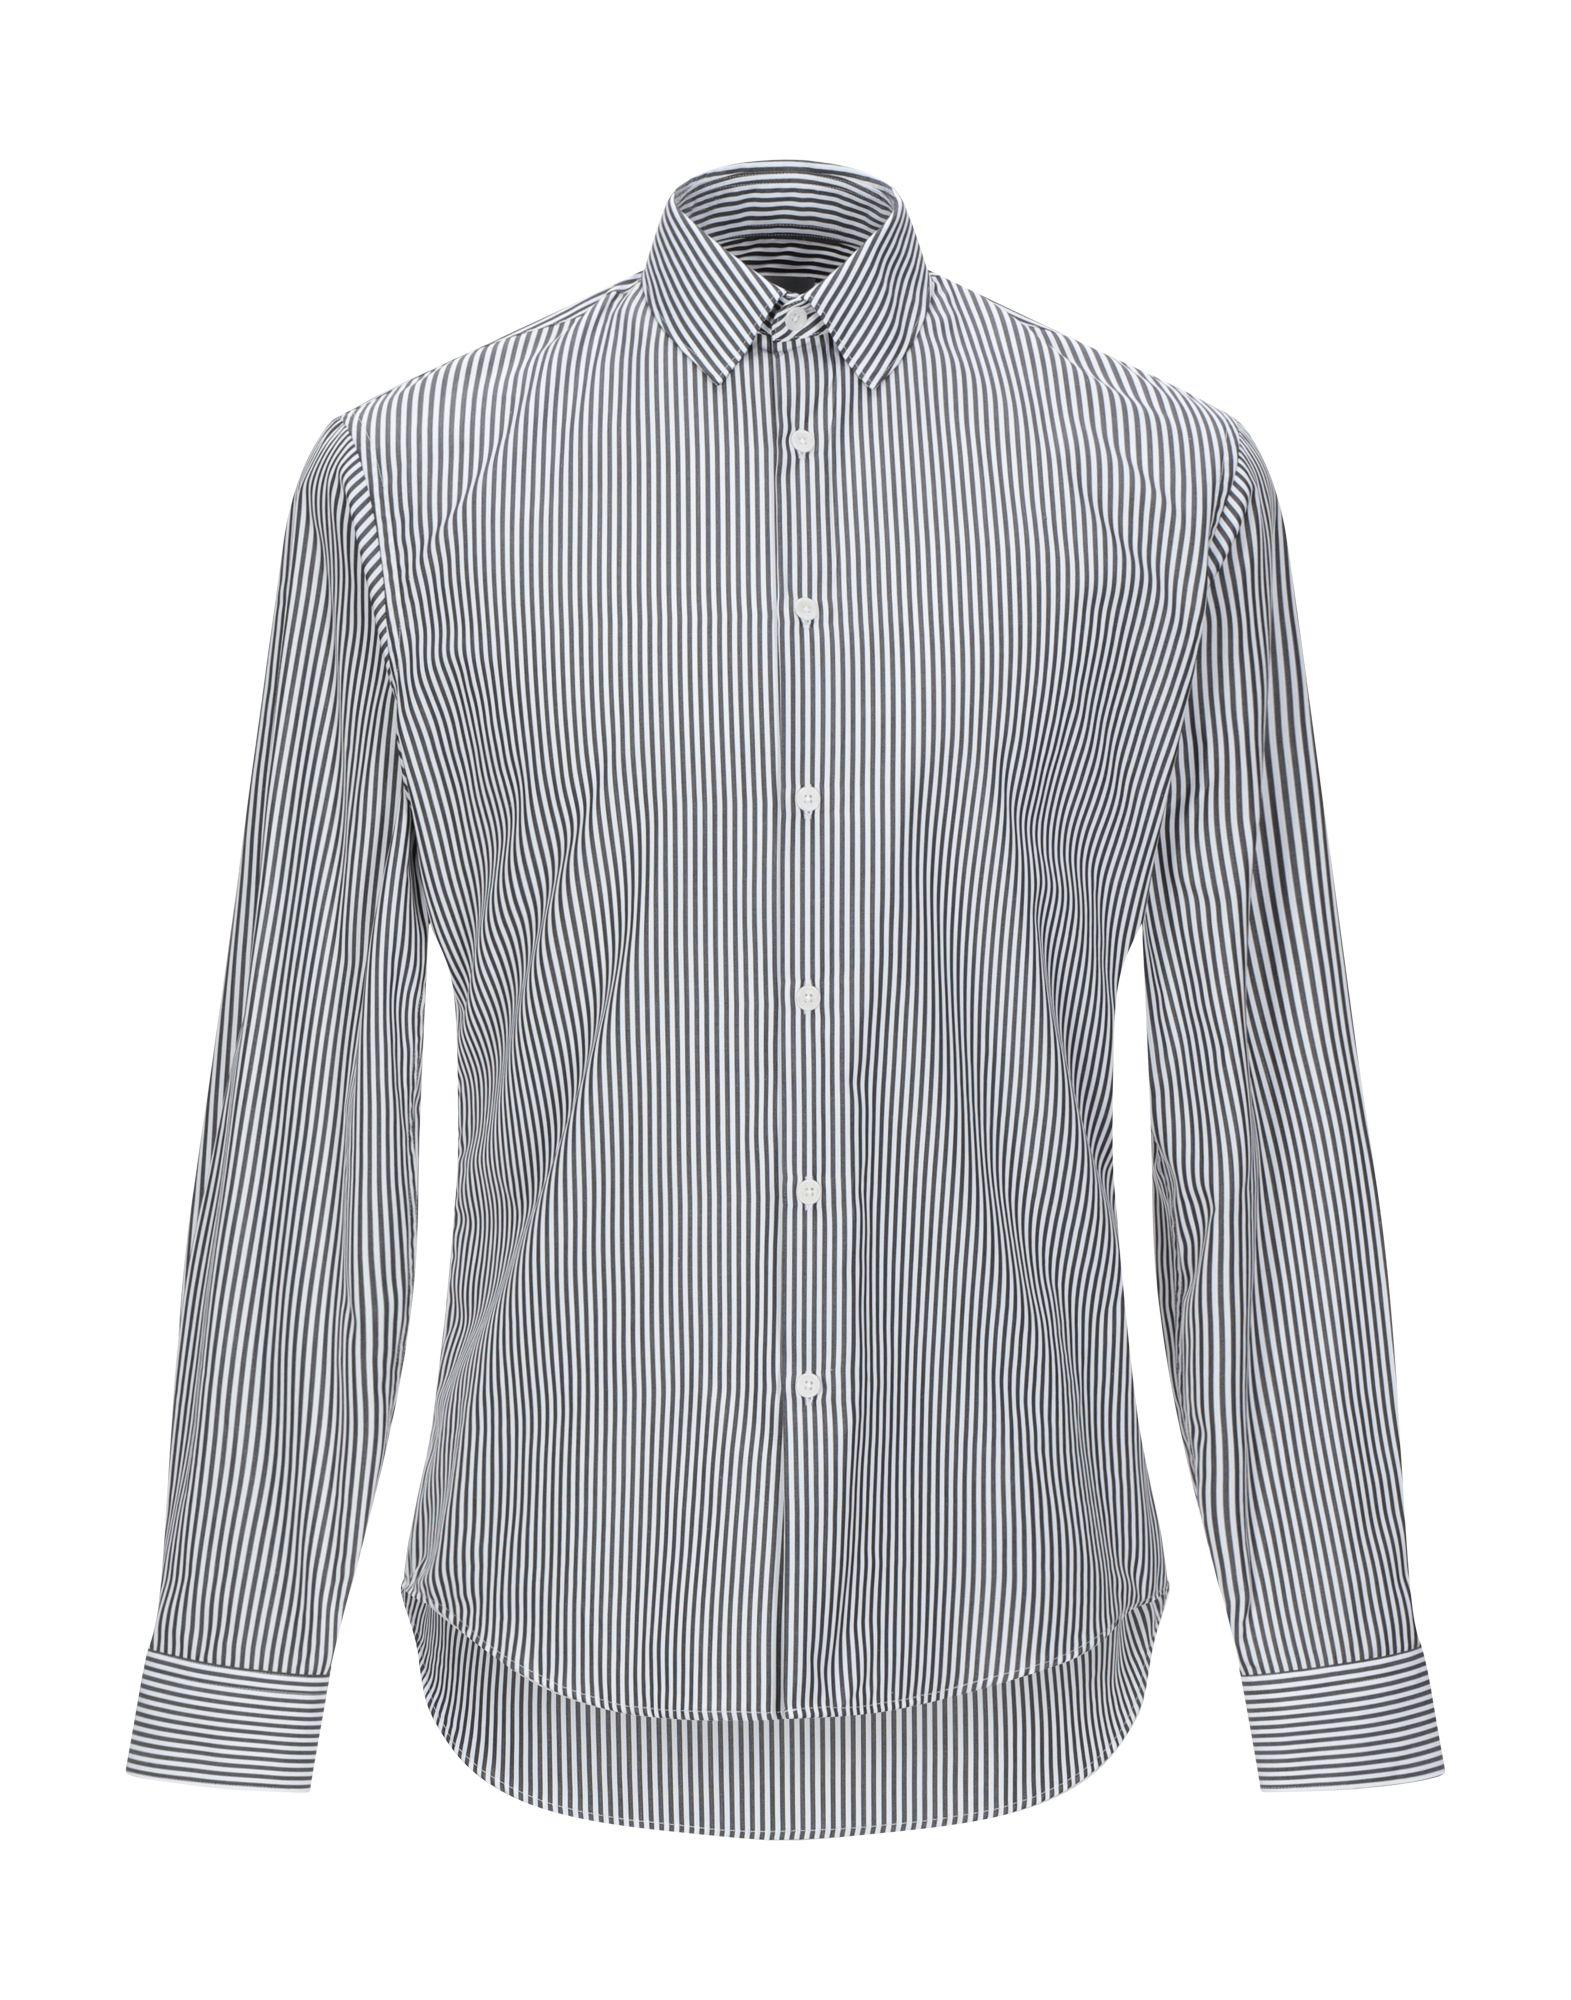 Sandro Cotton Shirt in White for Men - Lyst